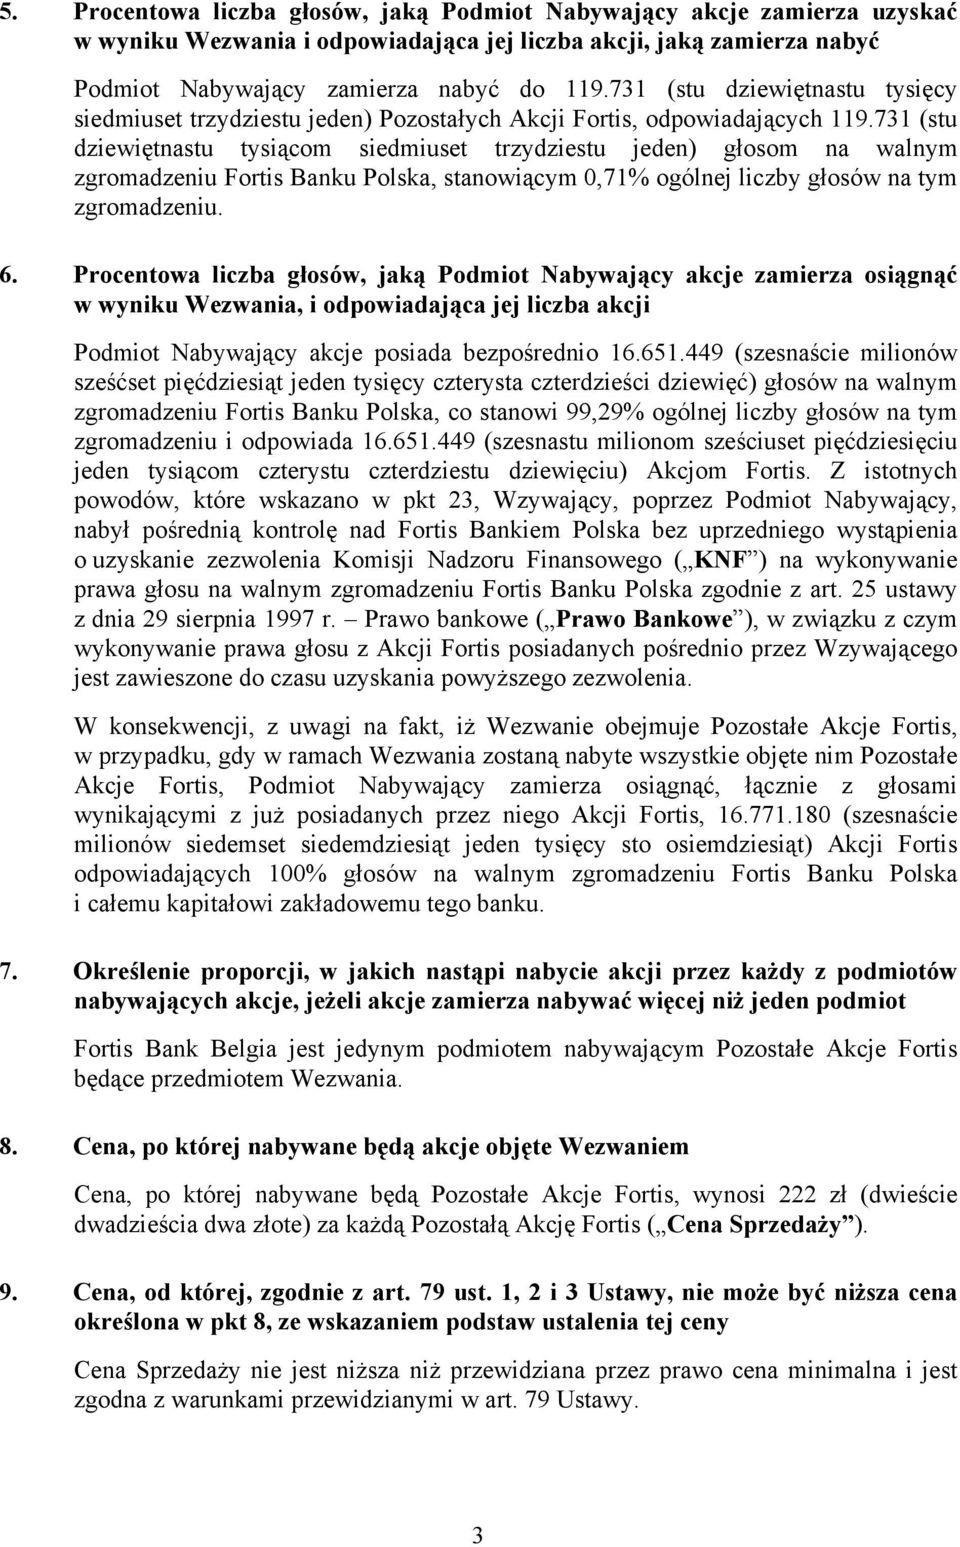 731 (stu dziewiętnastu tysiącom siedmiuset trzydziestu jeden) głosom na walnym zgromadzeniu Fortis Banku Polska, stanowiącym 0,71% ogólnej liczby głosów na tym zgromadzeniu. 6.